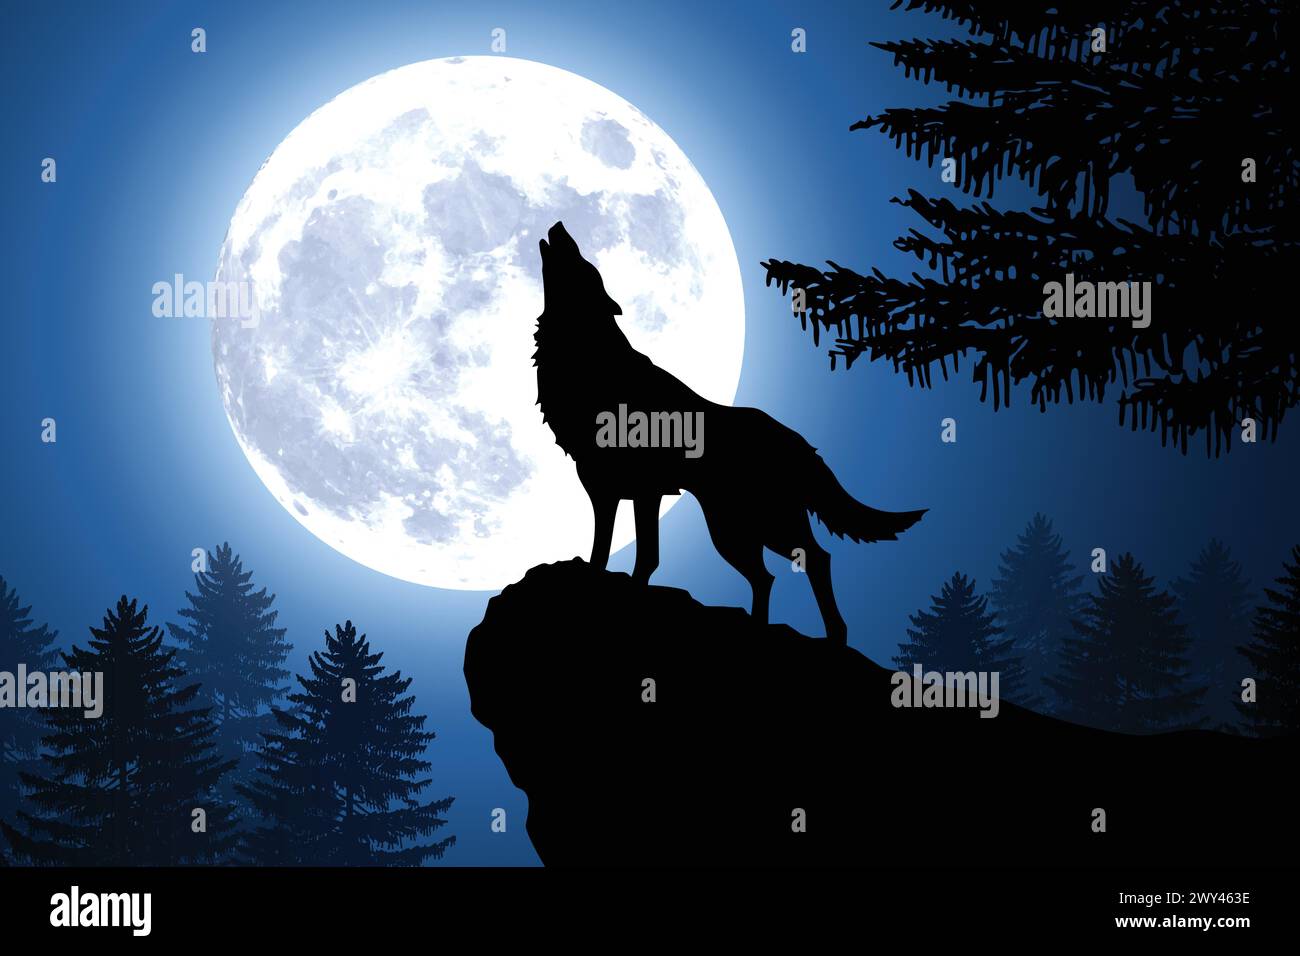 silhouette de loup hurlant sur une crête de colline par grande pleine lune dans une forêt avec illustration vectorielle de fond de ciel clair Illustration de Vecteur